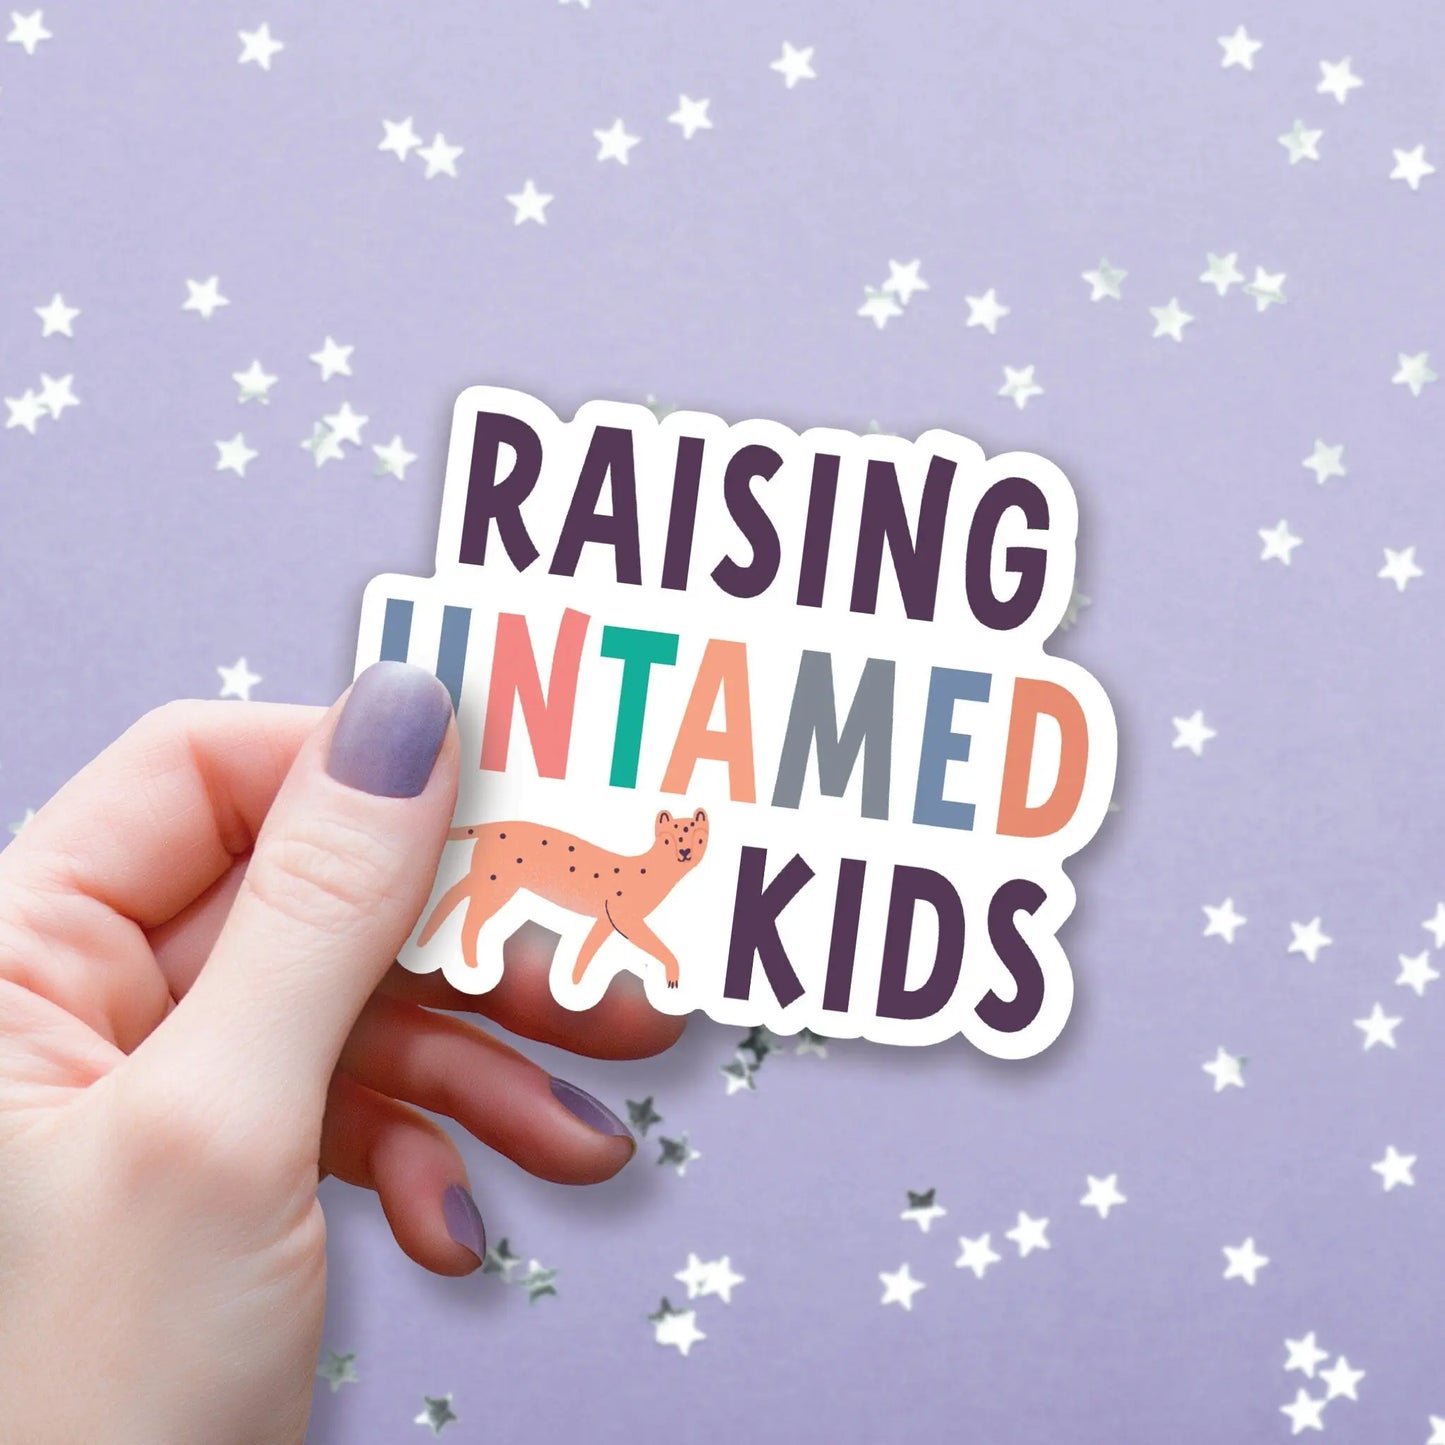 Raising Untamed Kids Sticker, 3-inch